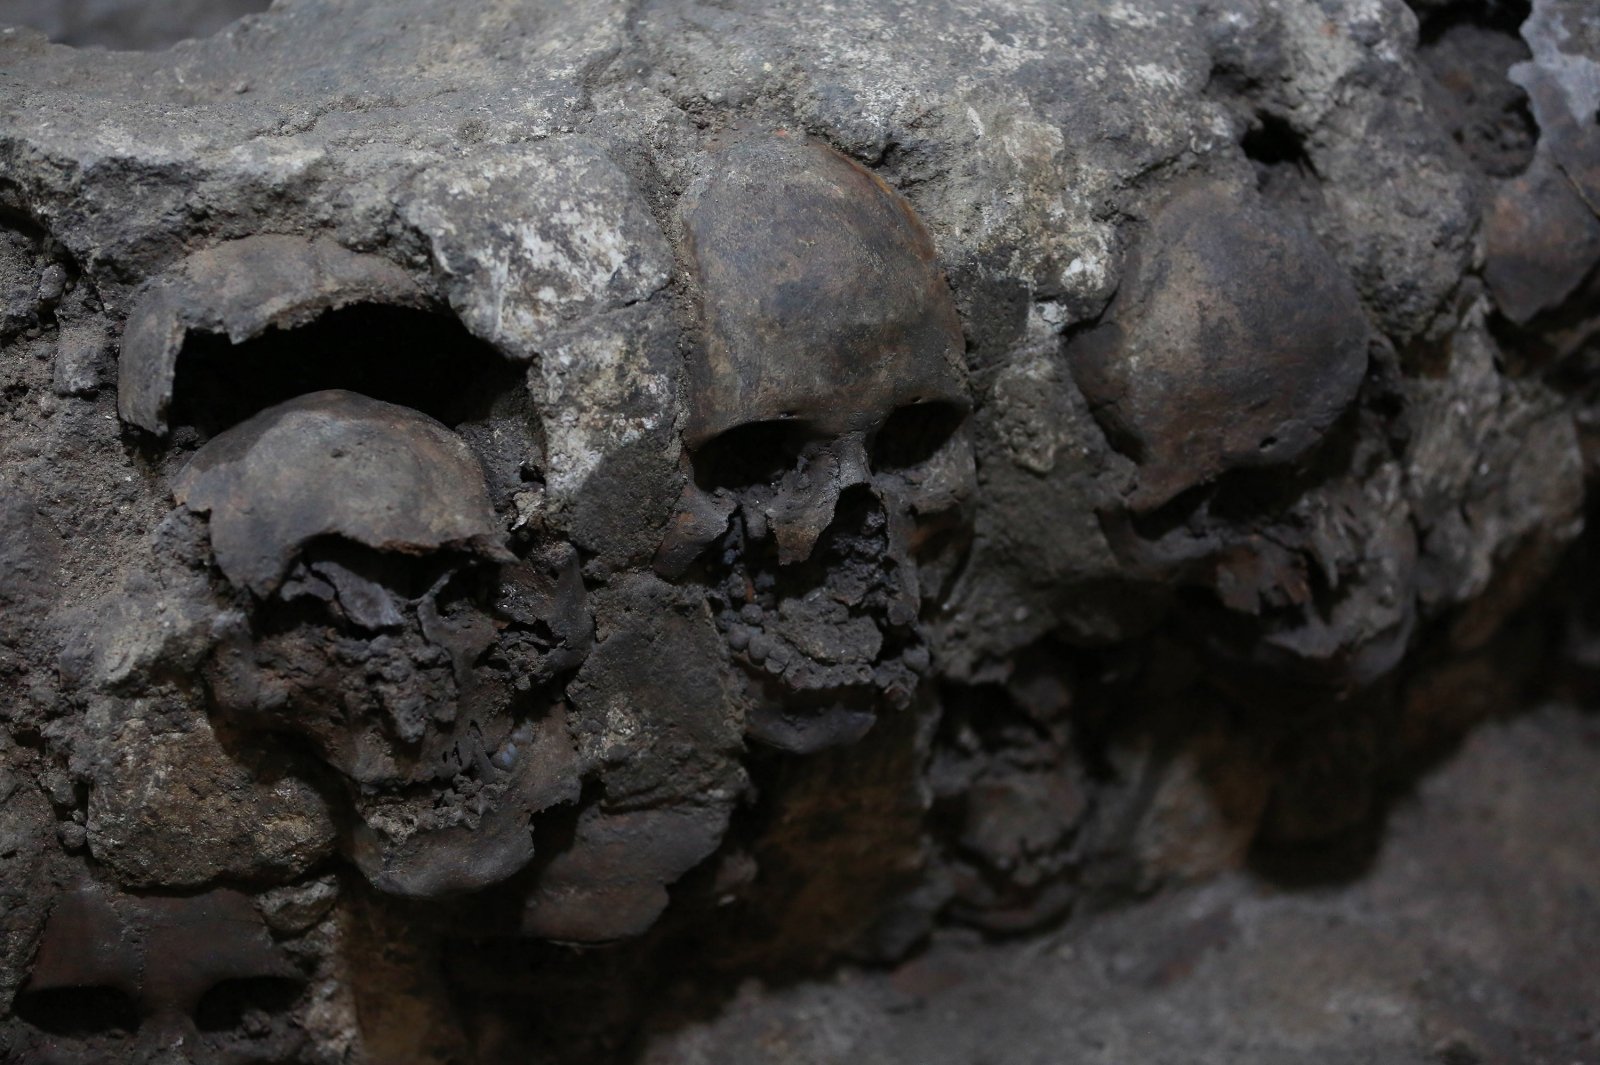 Forferdelig funn funnet i Mexico: underjordisk – spor etter et blodig spansk angrep, et tårn av menneskehodeskaller og en offersamling